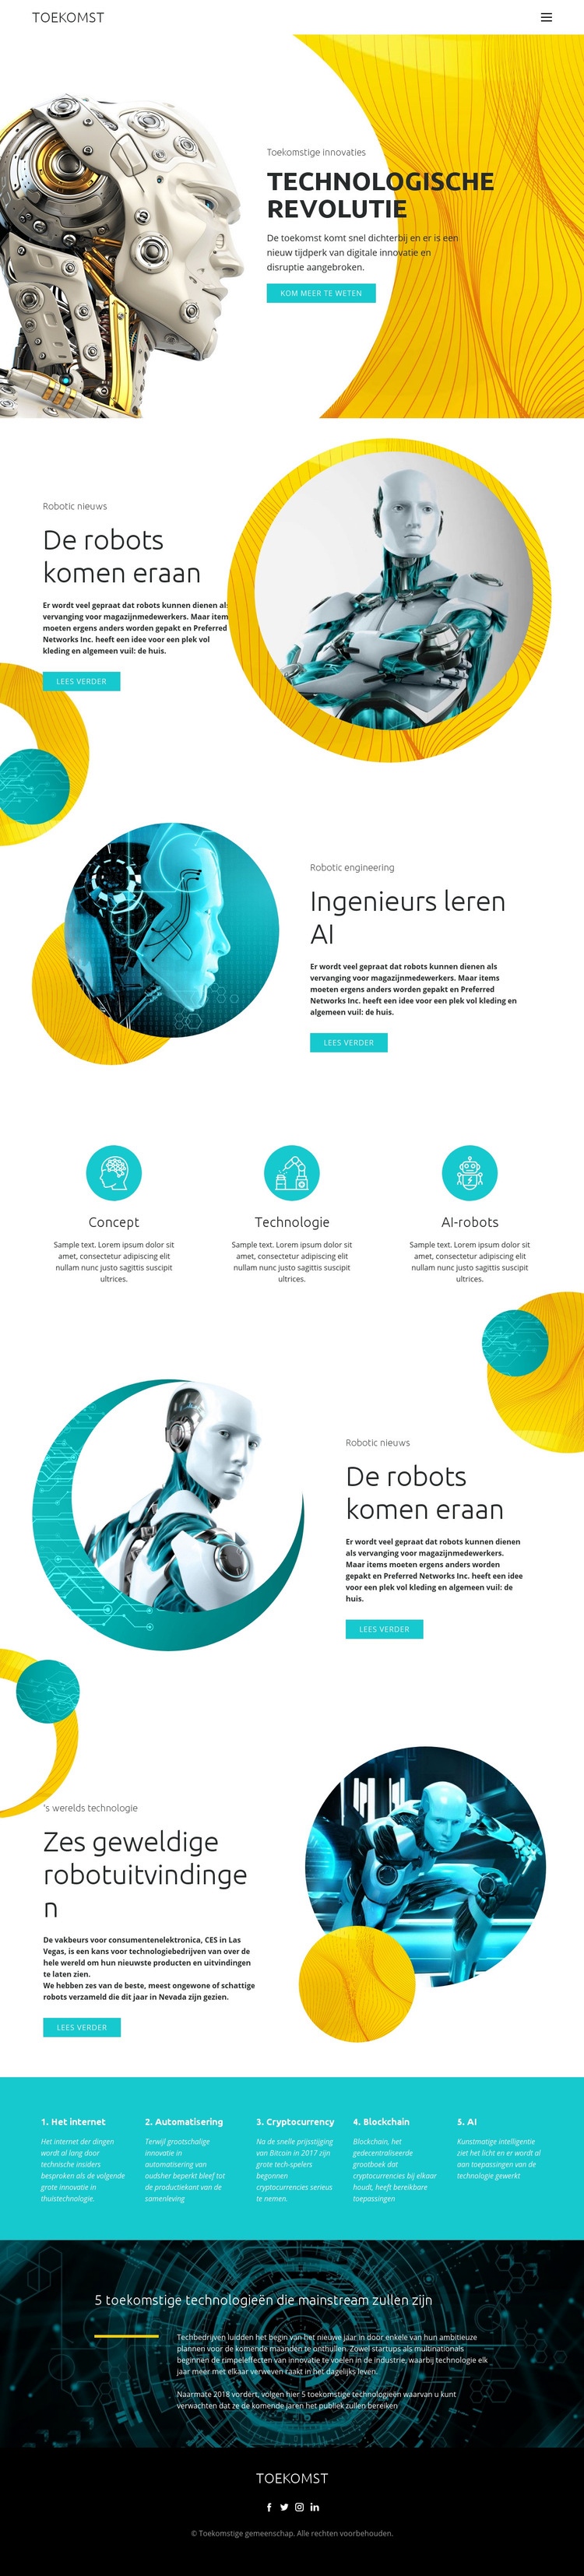 Vooruitgang in robottechnologie Website ontwerp